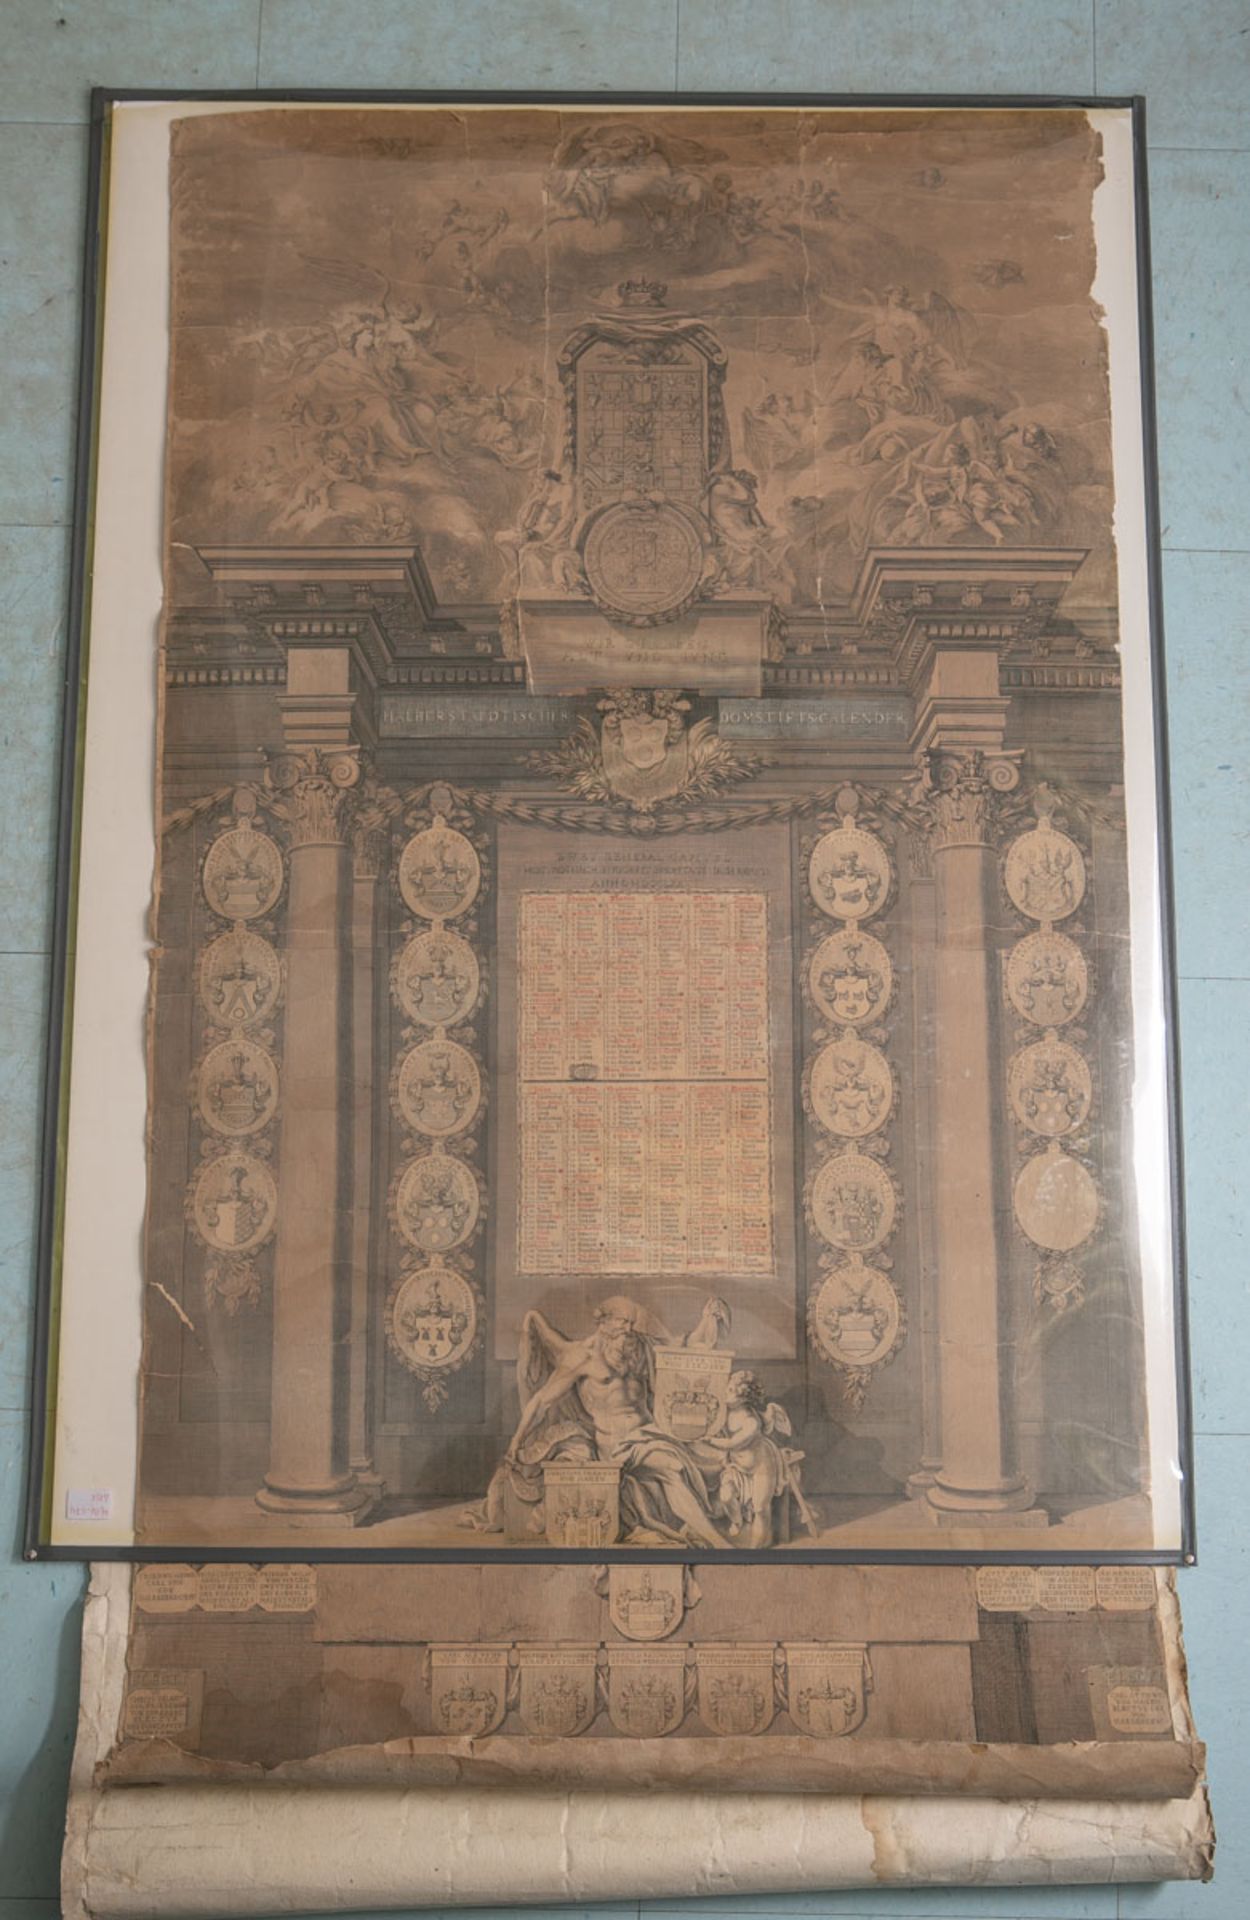 Übergroßer Kupferstich (18. Jh.), Halberstaedischer Domstiftskalender, bez. wohl "J.W. Meil", dat.